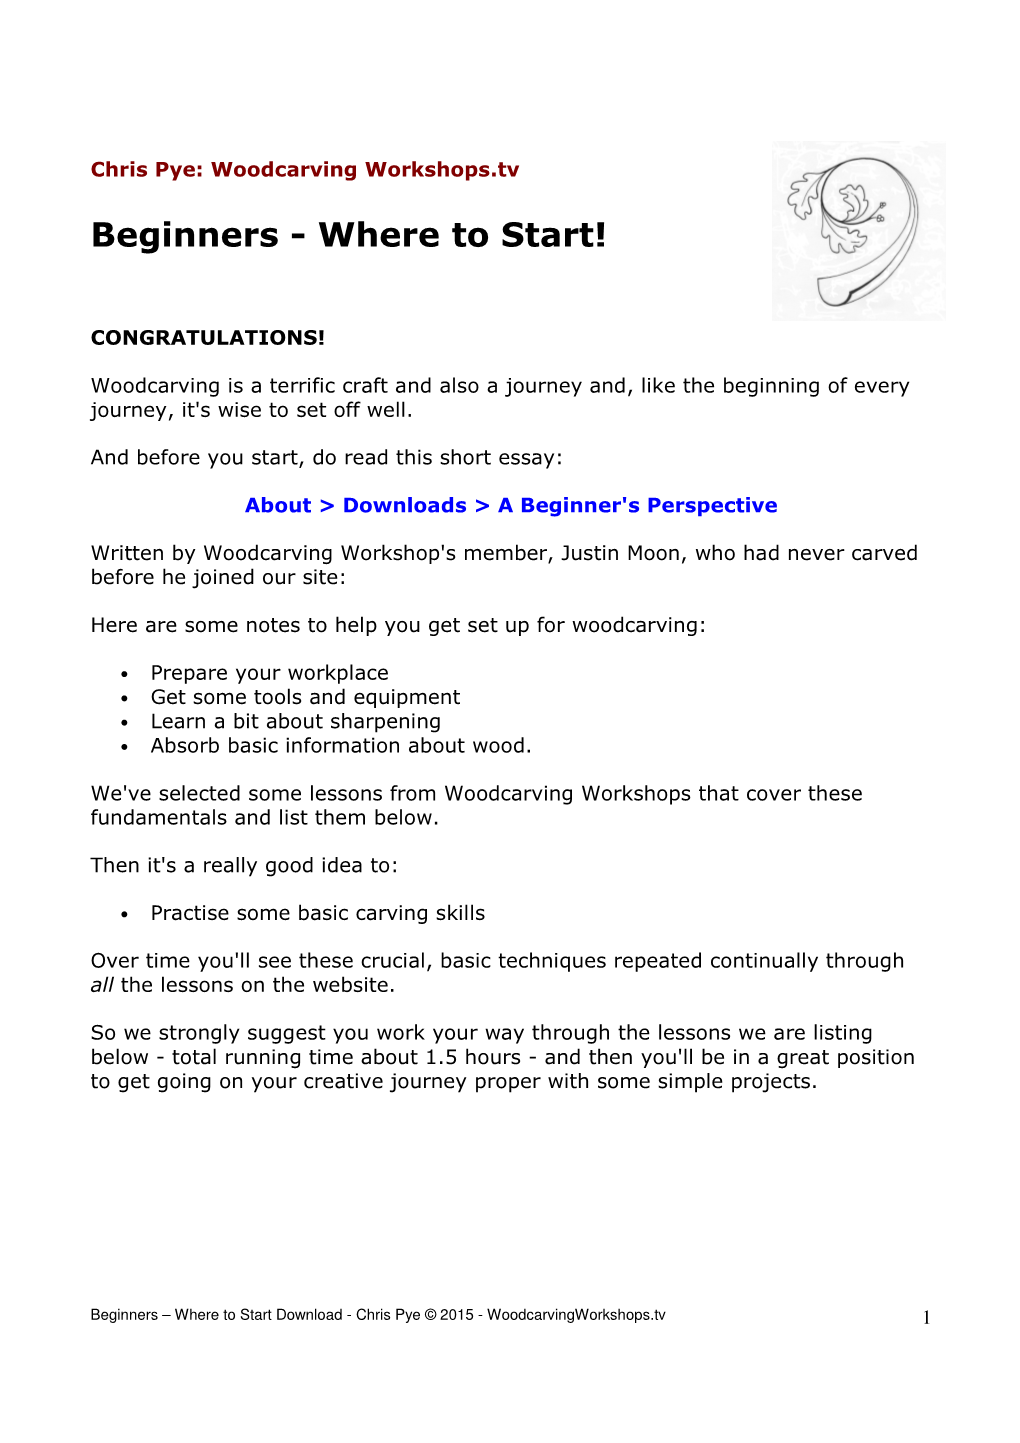 Beginners - Where to Start!